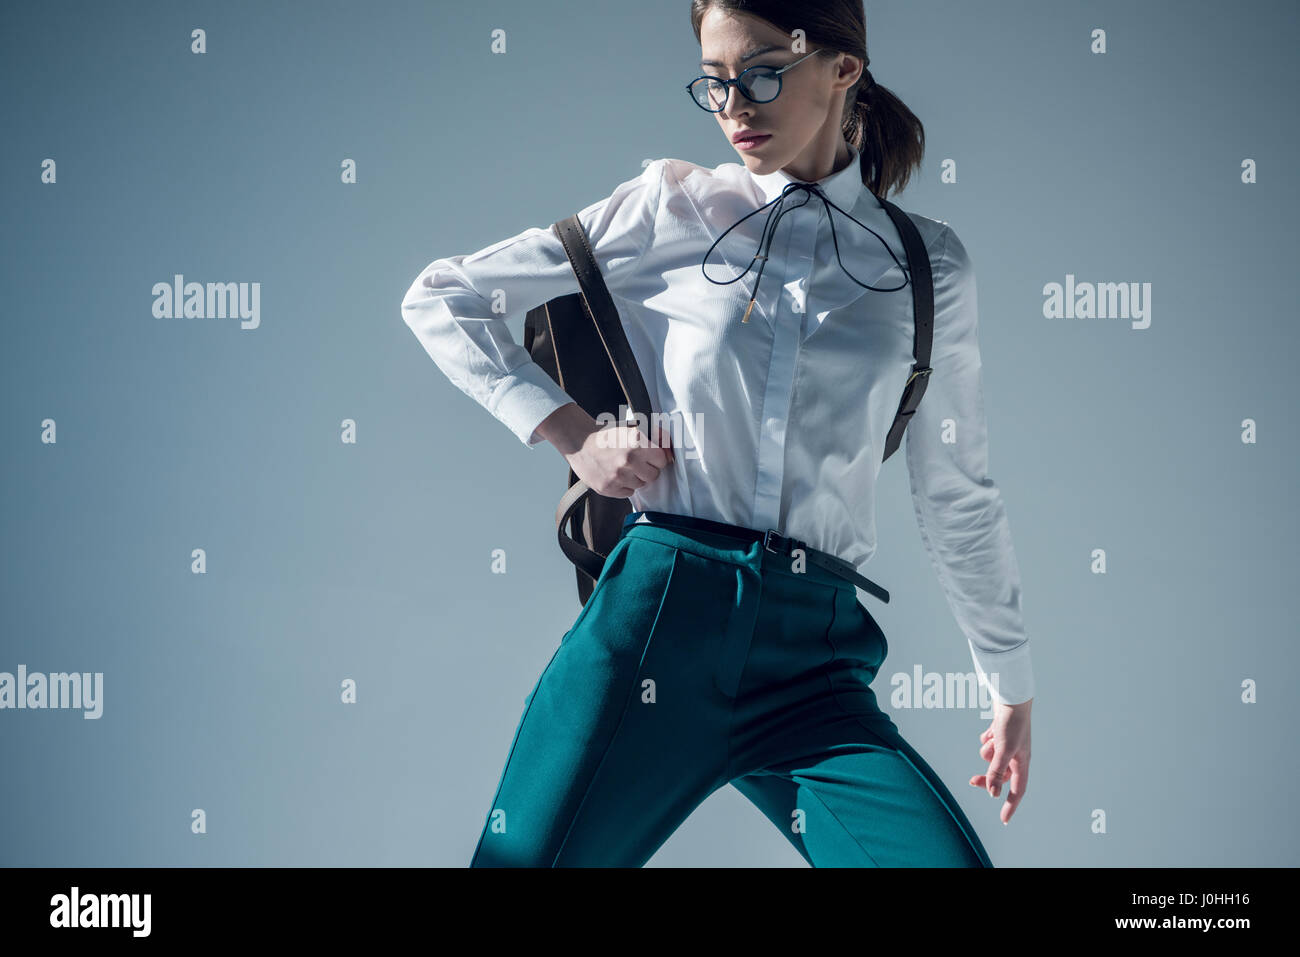 stilvolle Frau in weißem Hemd, grüne Hose und Gläser mit Rucksack  Stockfotografie - Alamy